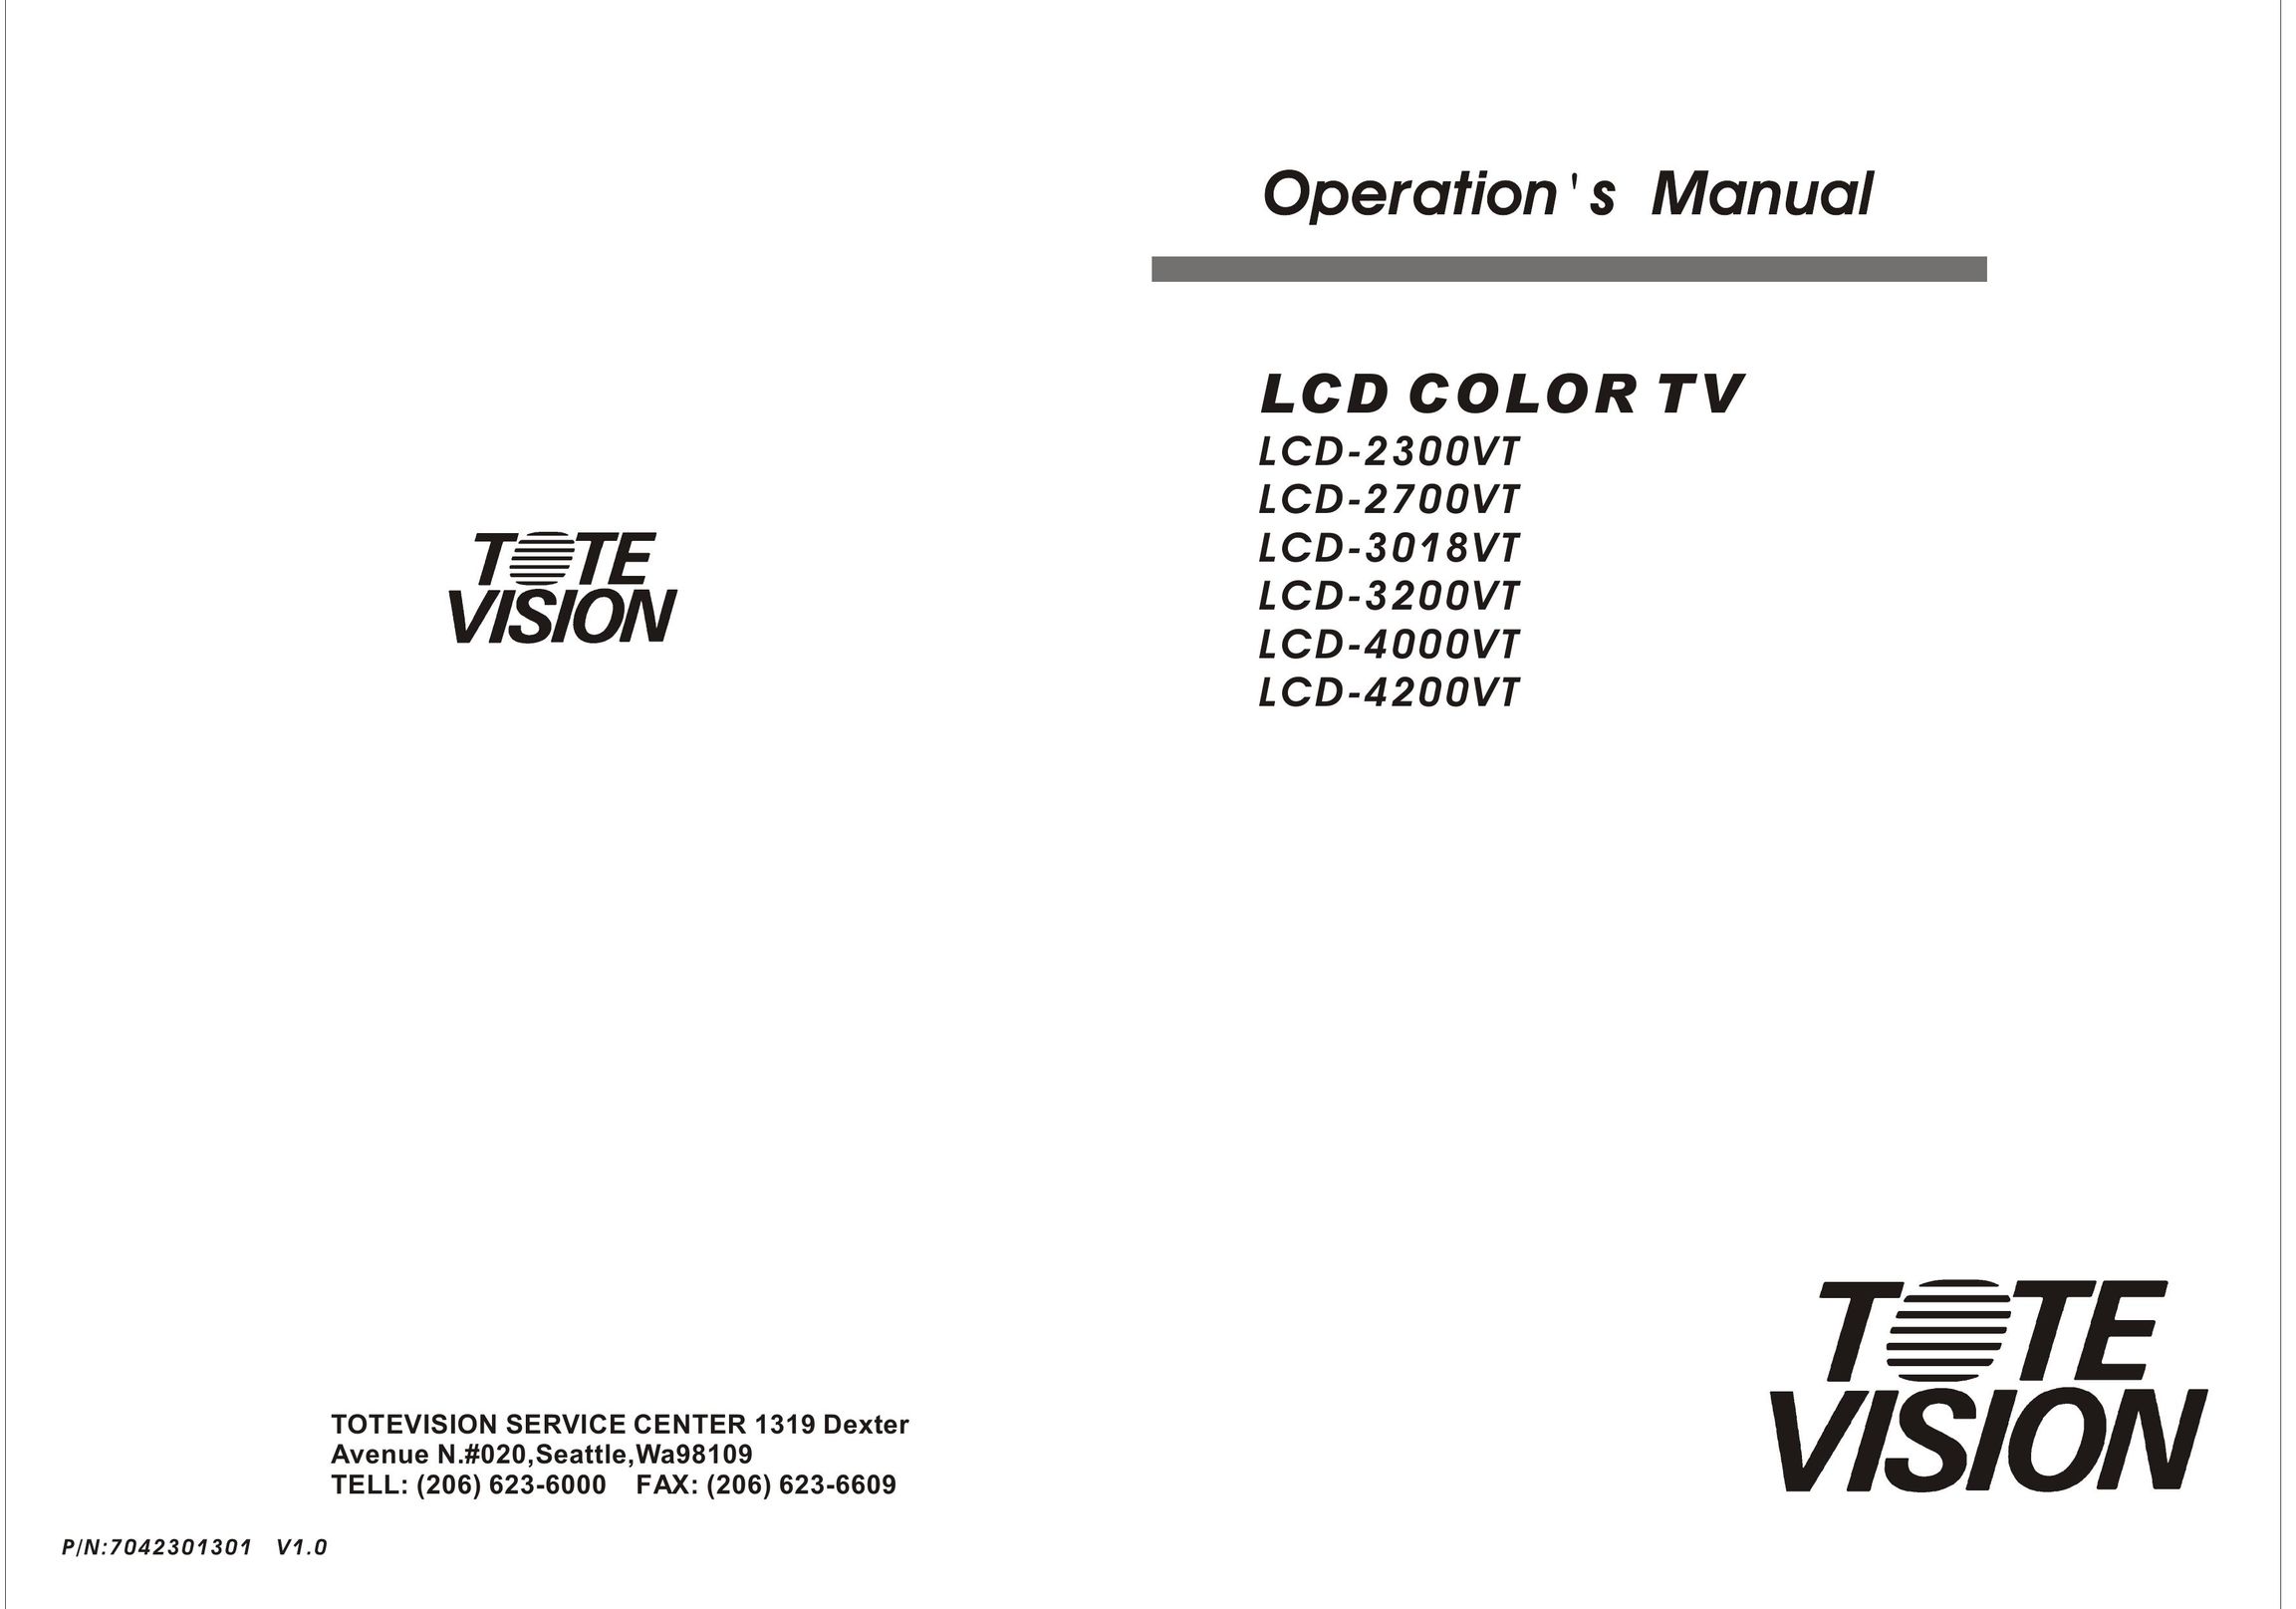 Tote Vision LCD-4200VT Flat Panel Television User Manual